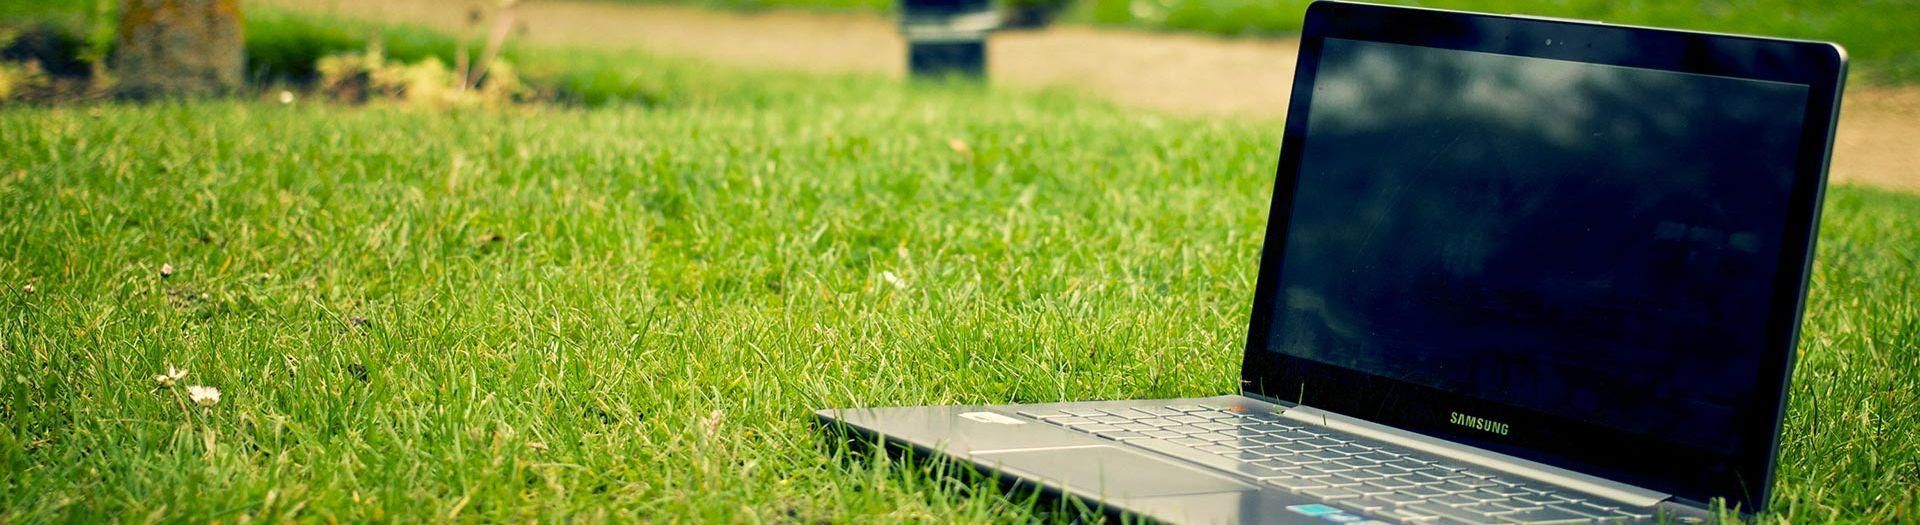 laptop-notebook-grass-meadow-1c6fa79c Nutzungsbedingungen